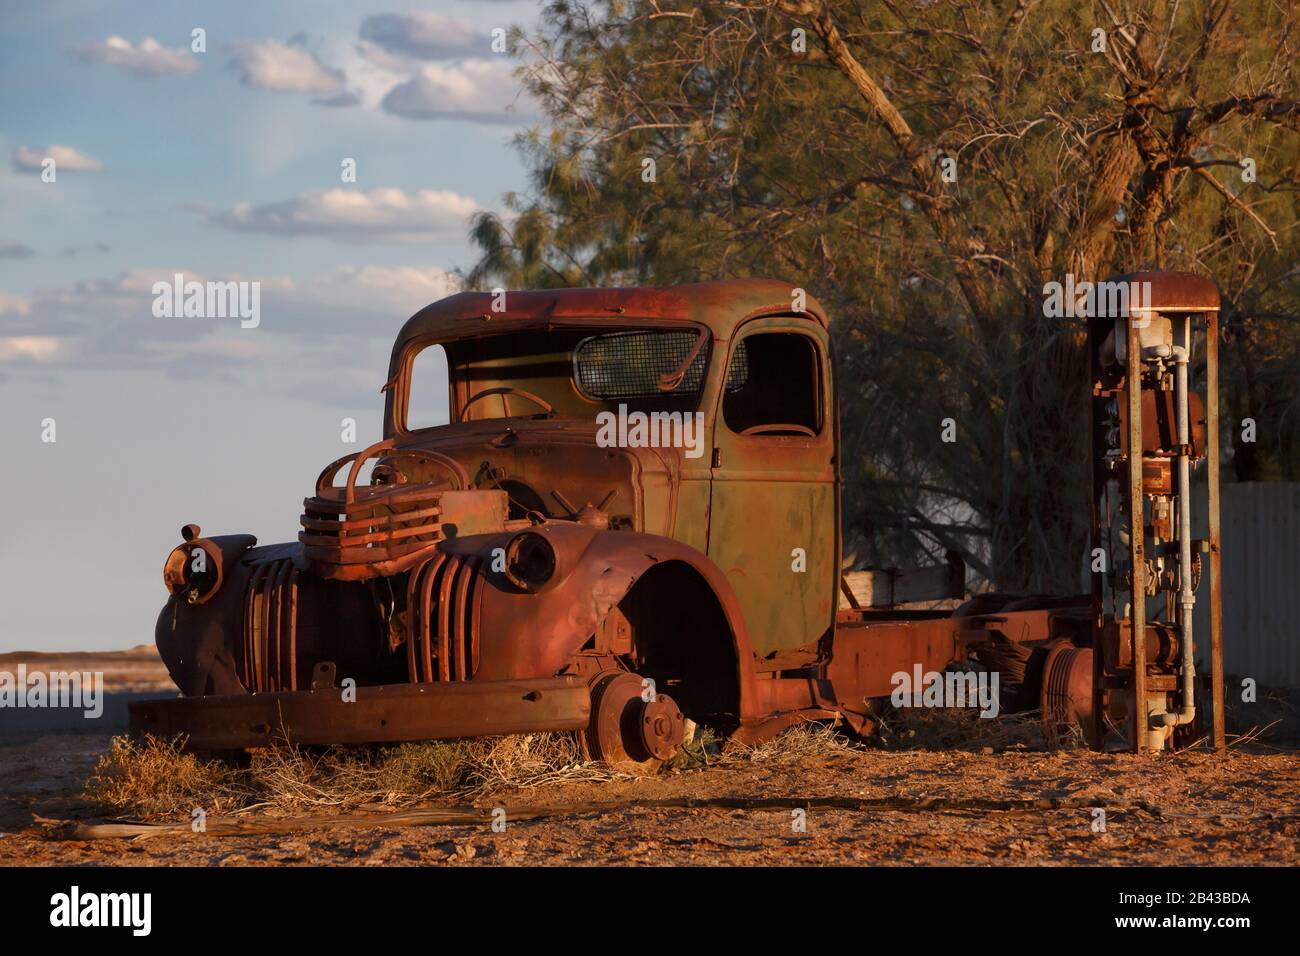 el viejo y oxidado naufragio abandonado del camión de recogida se encuentra abandonado en el lado de una carretera al atardecer Foto de stock